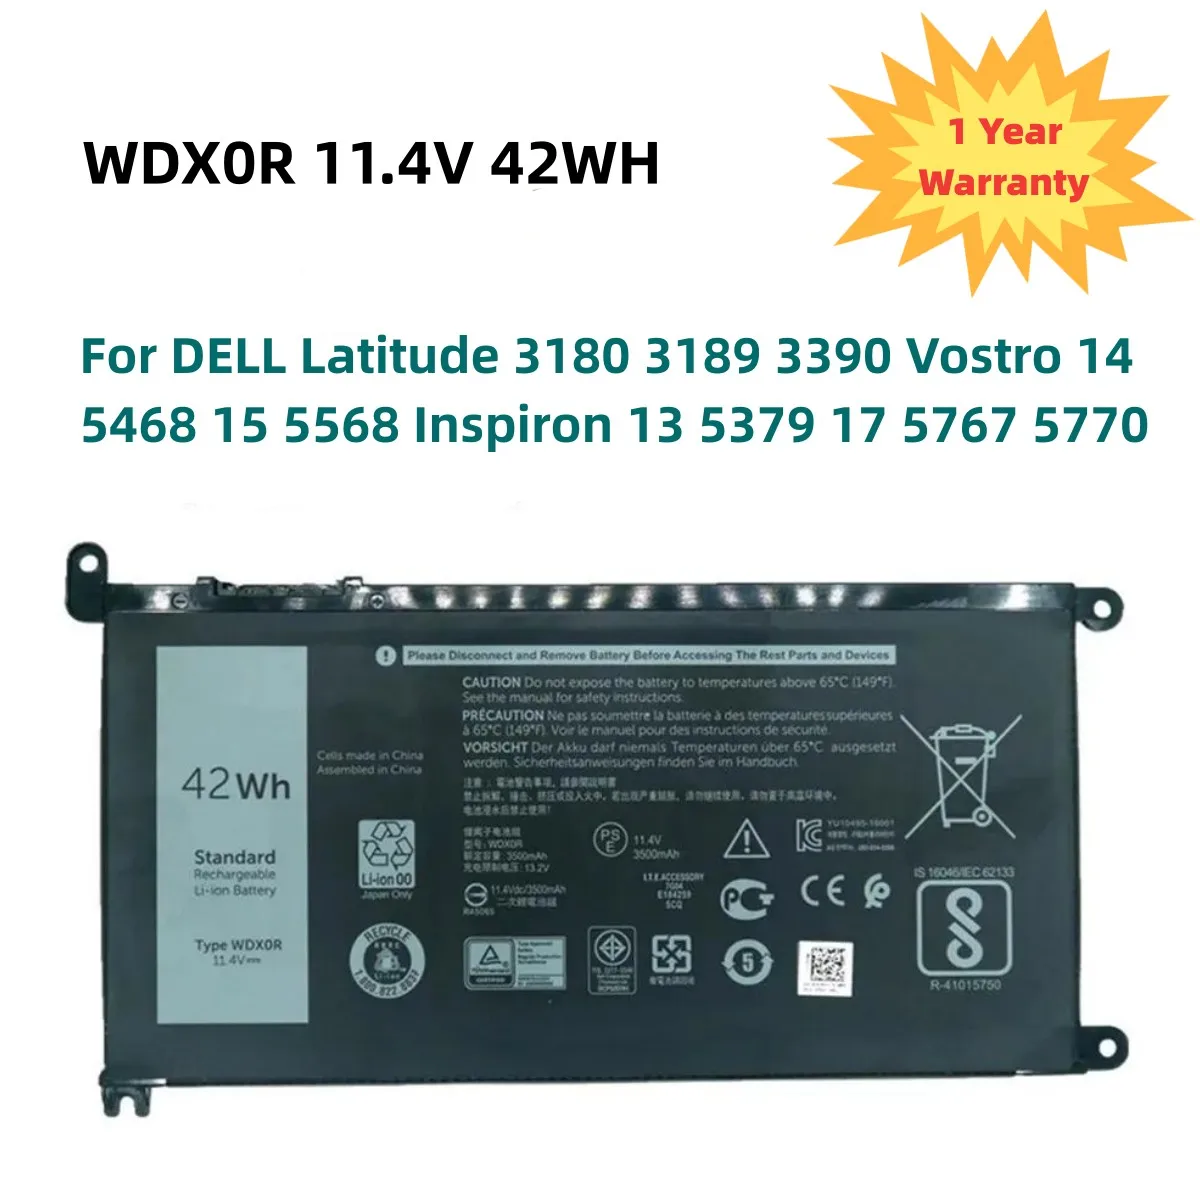 

WDX0R 11.4V 42WH For DELL WDXOR Battery For DELL Latitude 3180 3189 3390 Vostro 14 5468 15 5568 Inspiron 13 5379 17 5767 5770